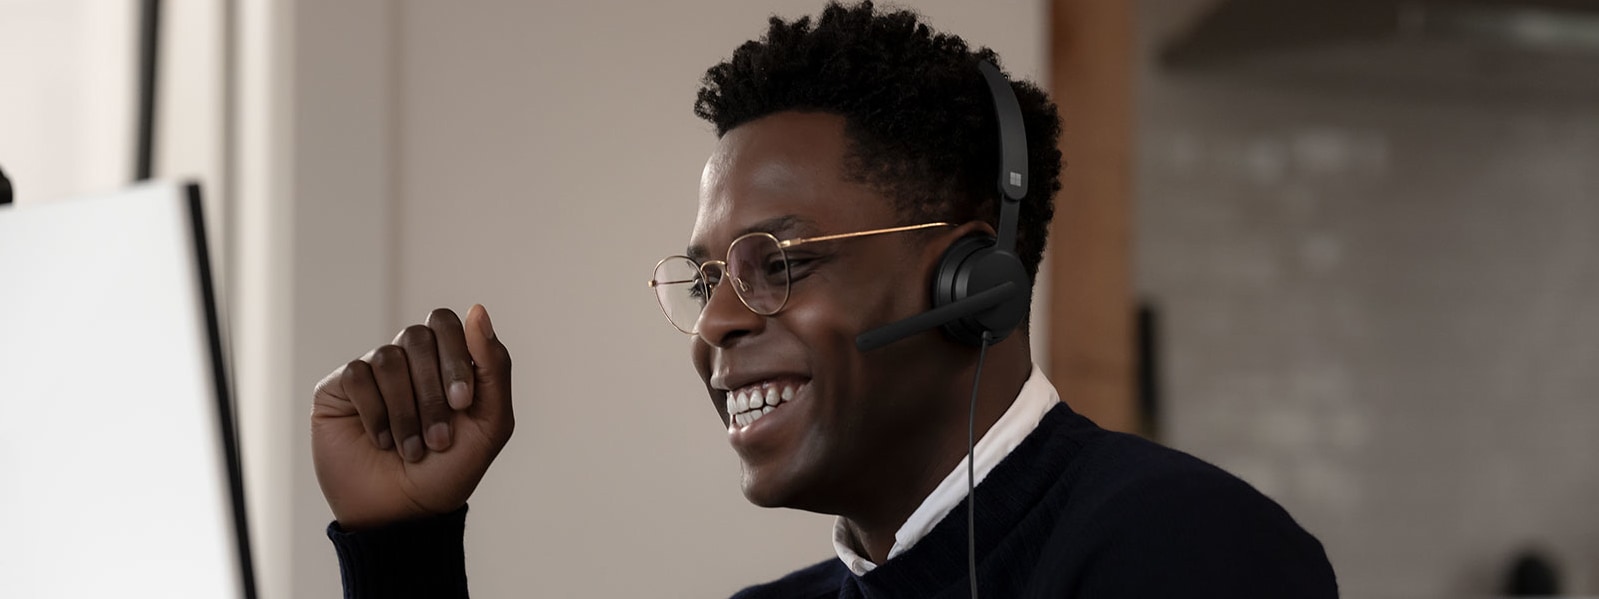 Un hombre lleva puestos unos audífonos Microsoft Modern USB headset, sonríe hacia su equipo mientras levanta la mano